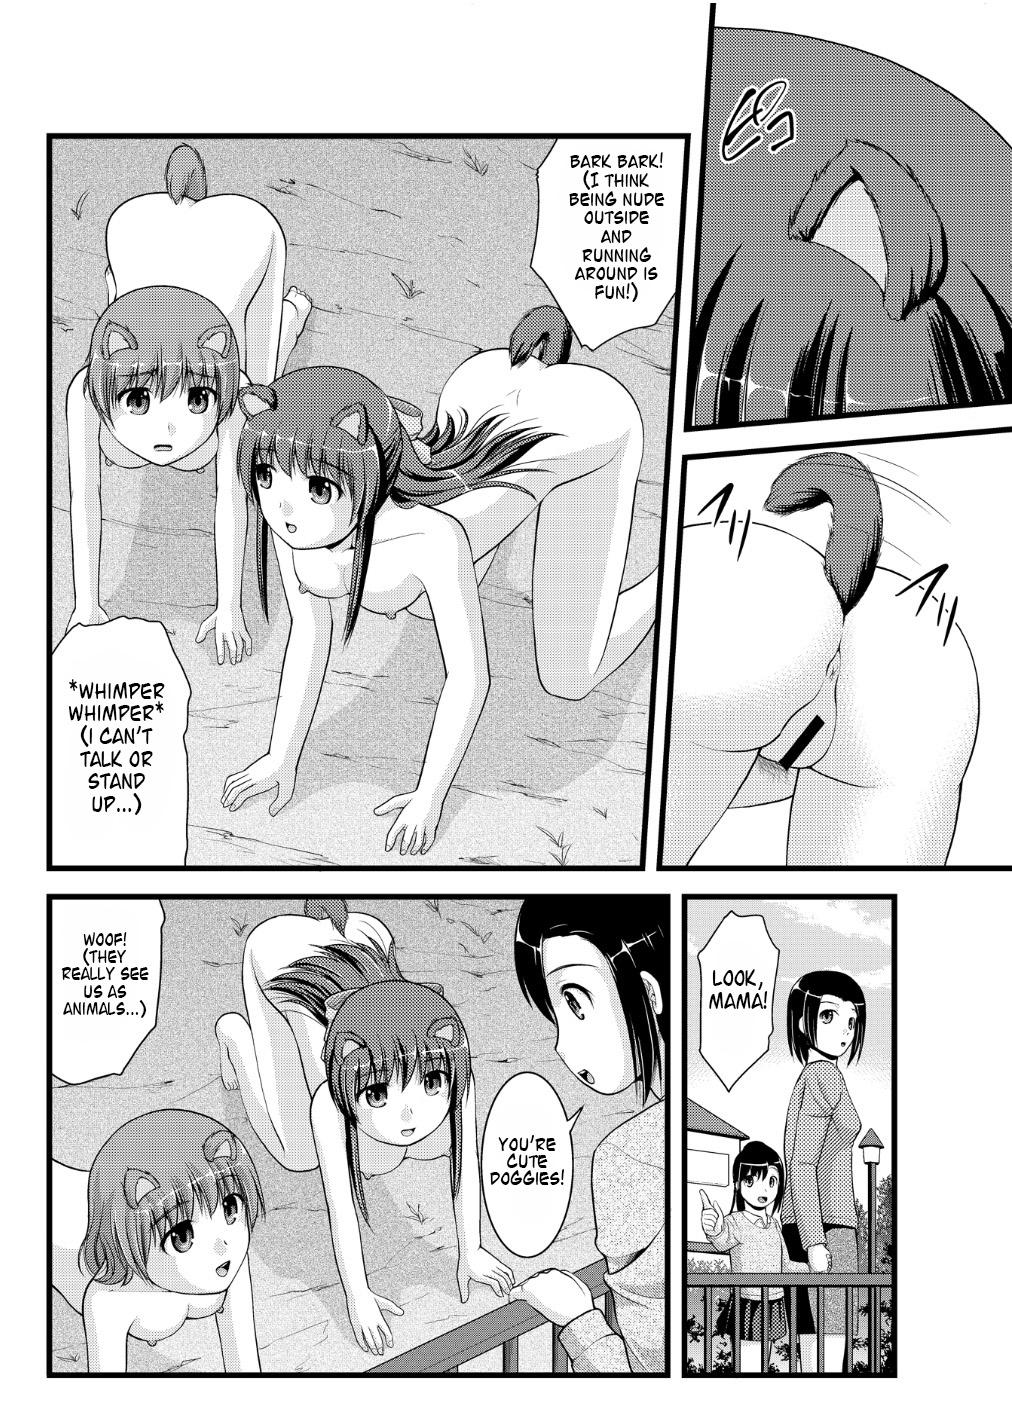 Threeway [Shinenkan] Joutaihenka Manga vol. 4 ~Umareta mama no Sugata de~ | Transformation Comics Vol. 4 ~In Their Natural Born Figure~ [English] Shavedpussy - Page 6